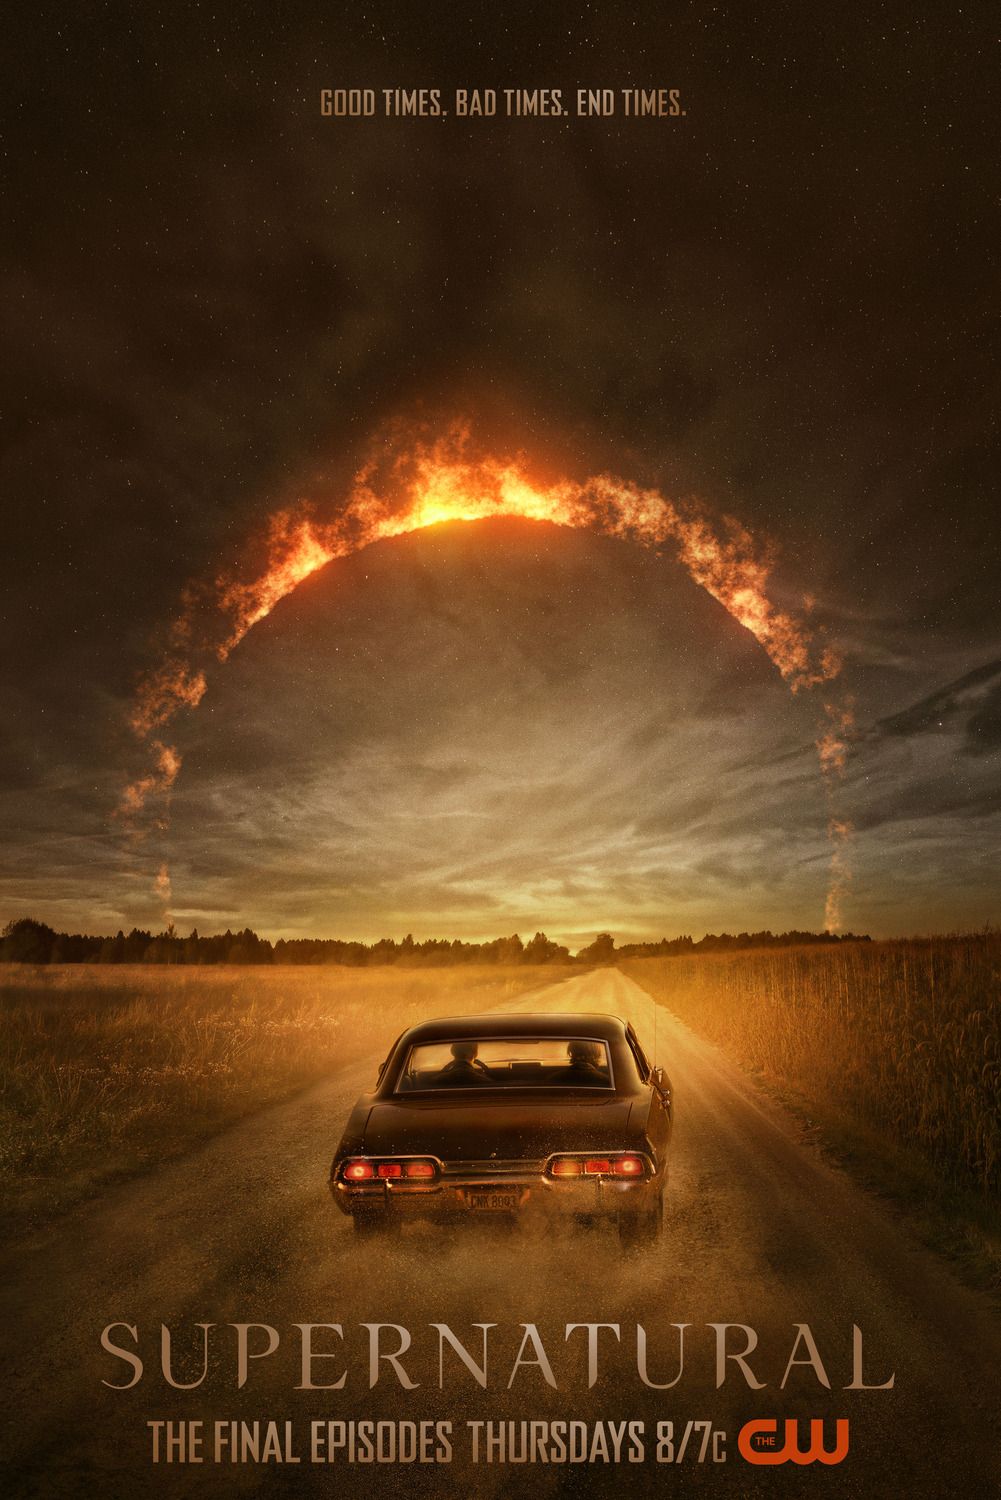 El Black Impala de los Winchester se dirige hacia un horizonte infernal en el póster de la serie de televisión Supernatural